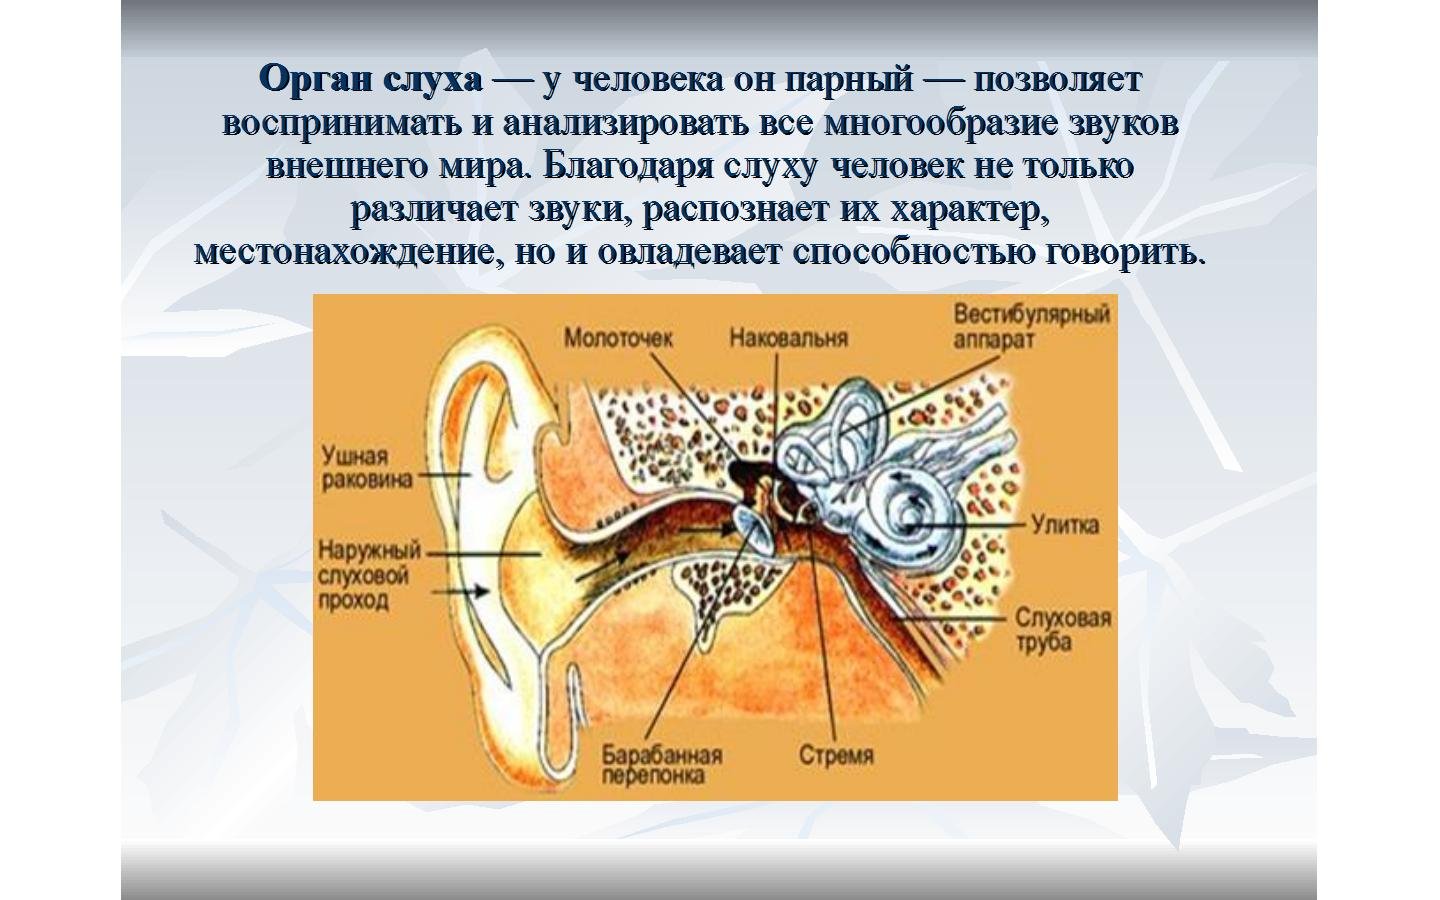 Орган слуха рыб внутреннее ухо. Орган слуха человека. Строение органа слуха. Уши орган слуха. Строение органа слуха человека.